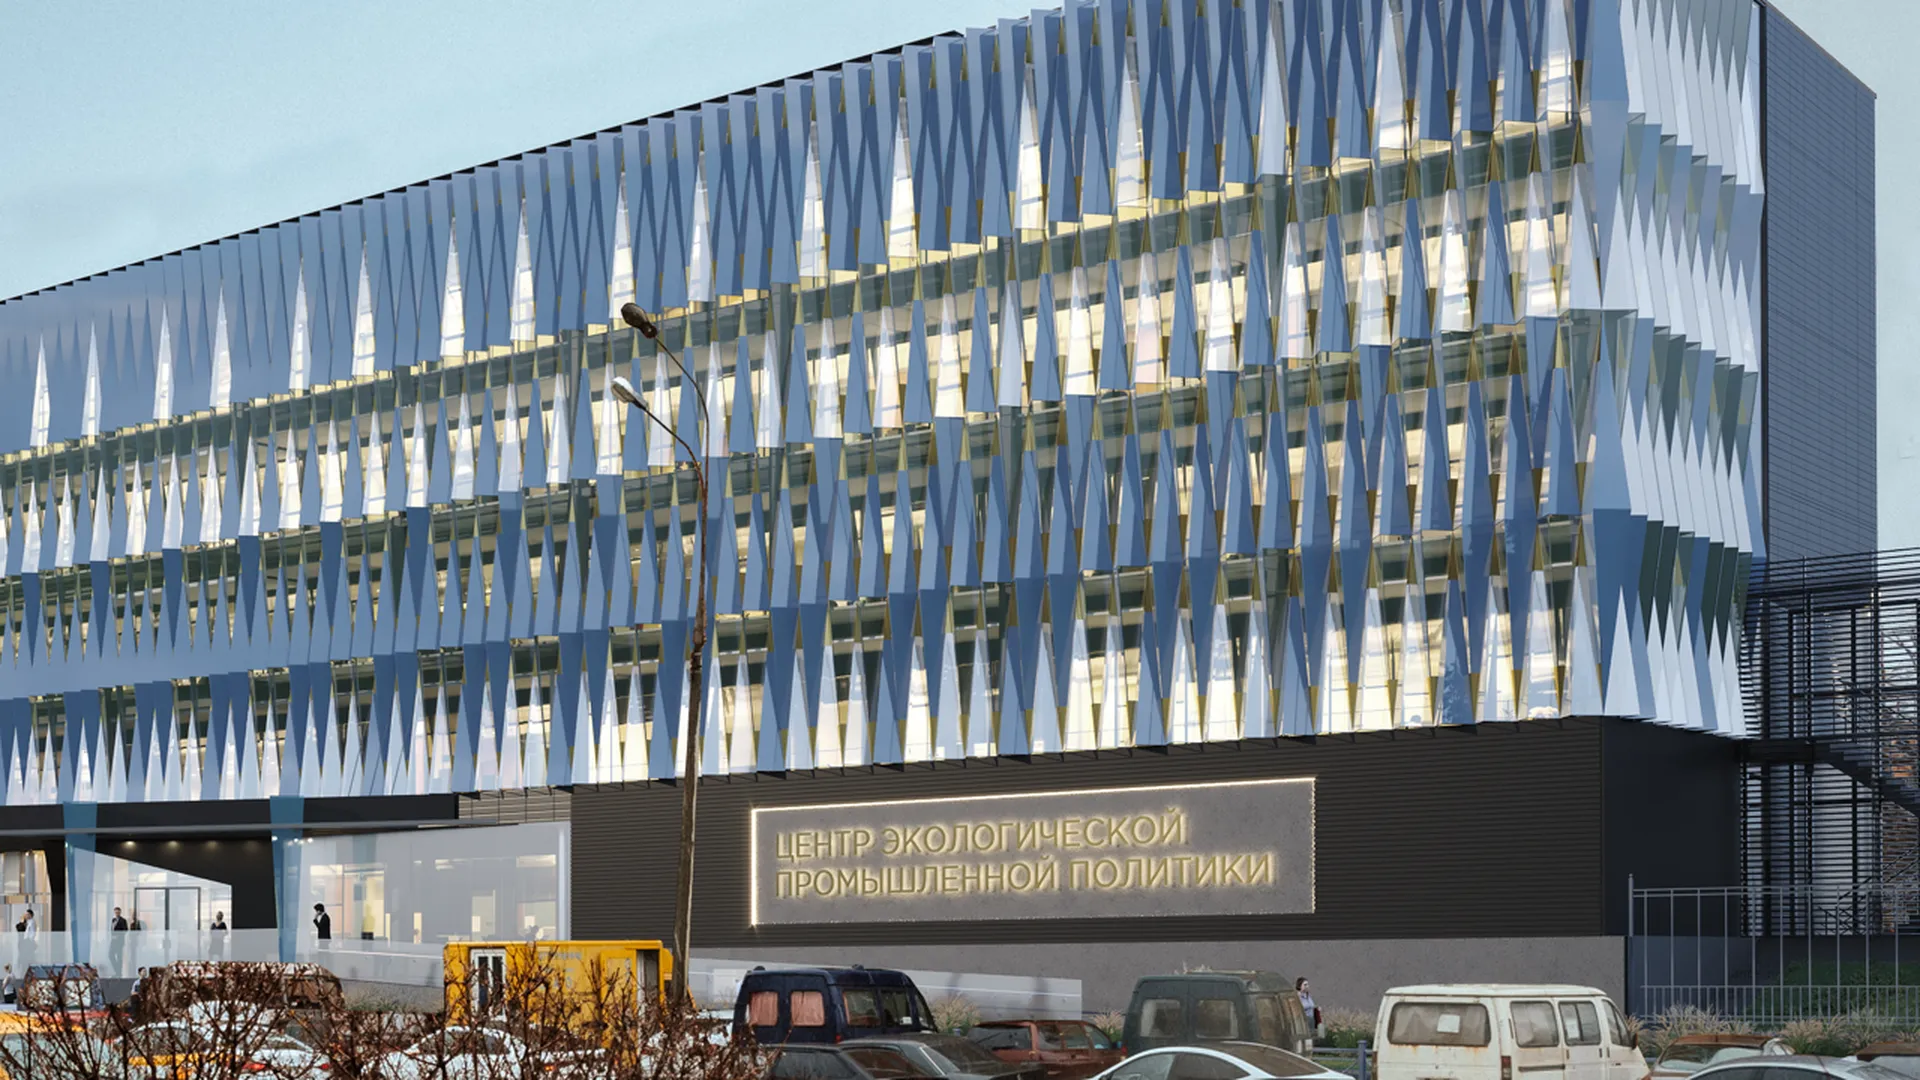 В Центре экологической промышленной политики в подмосковных Мытищах пройдет реконструкция